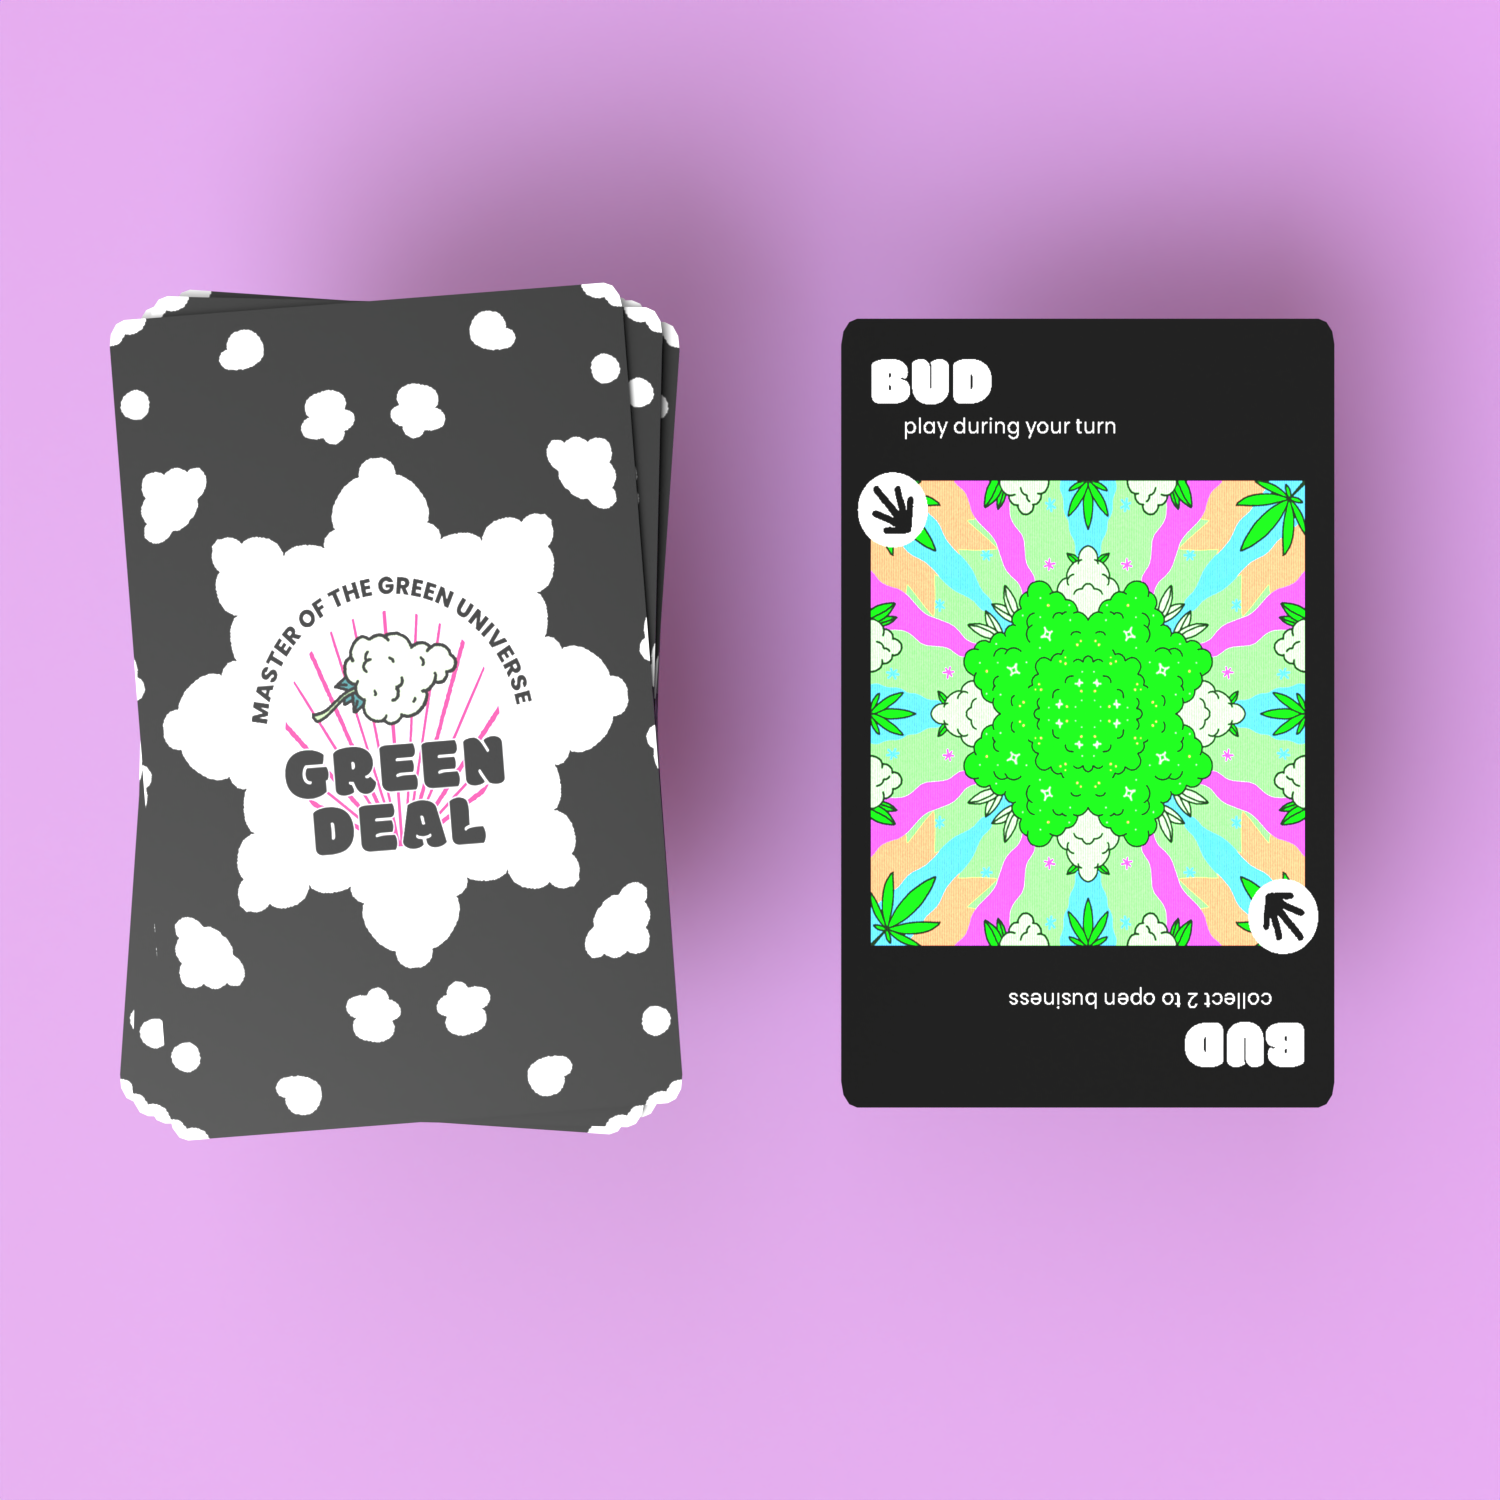 GREEN DEAL Kartenspiel Cannabis Card Game Spielszene Zug beenden